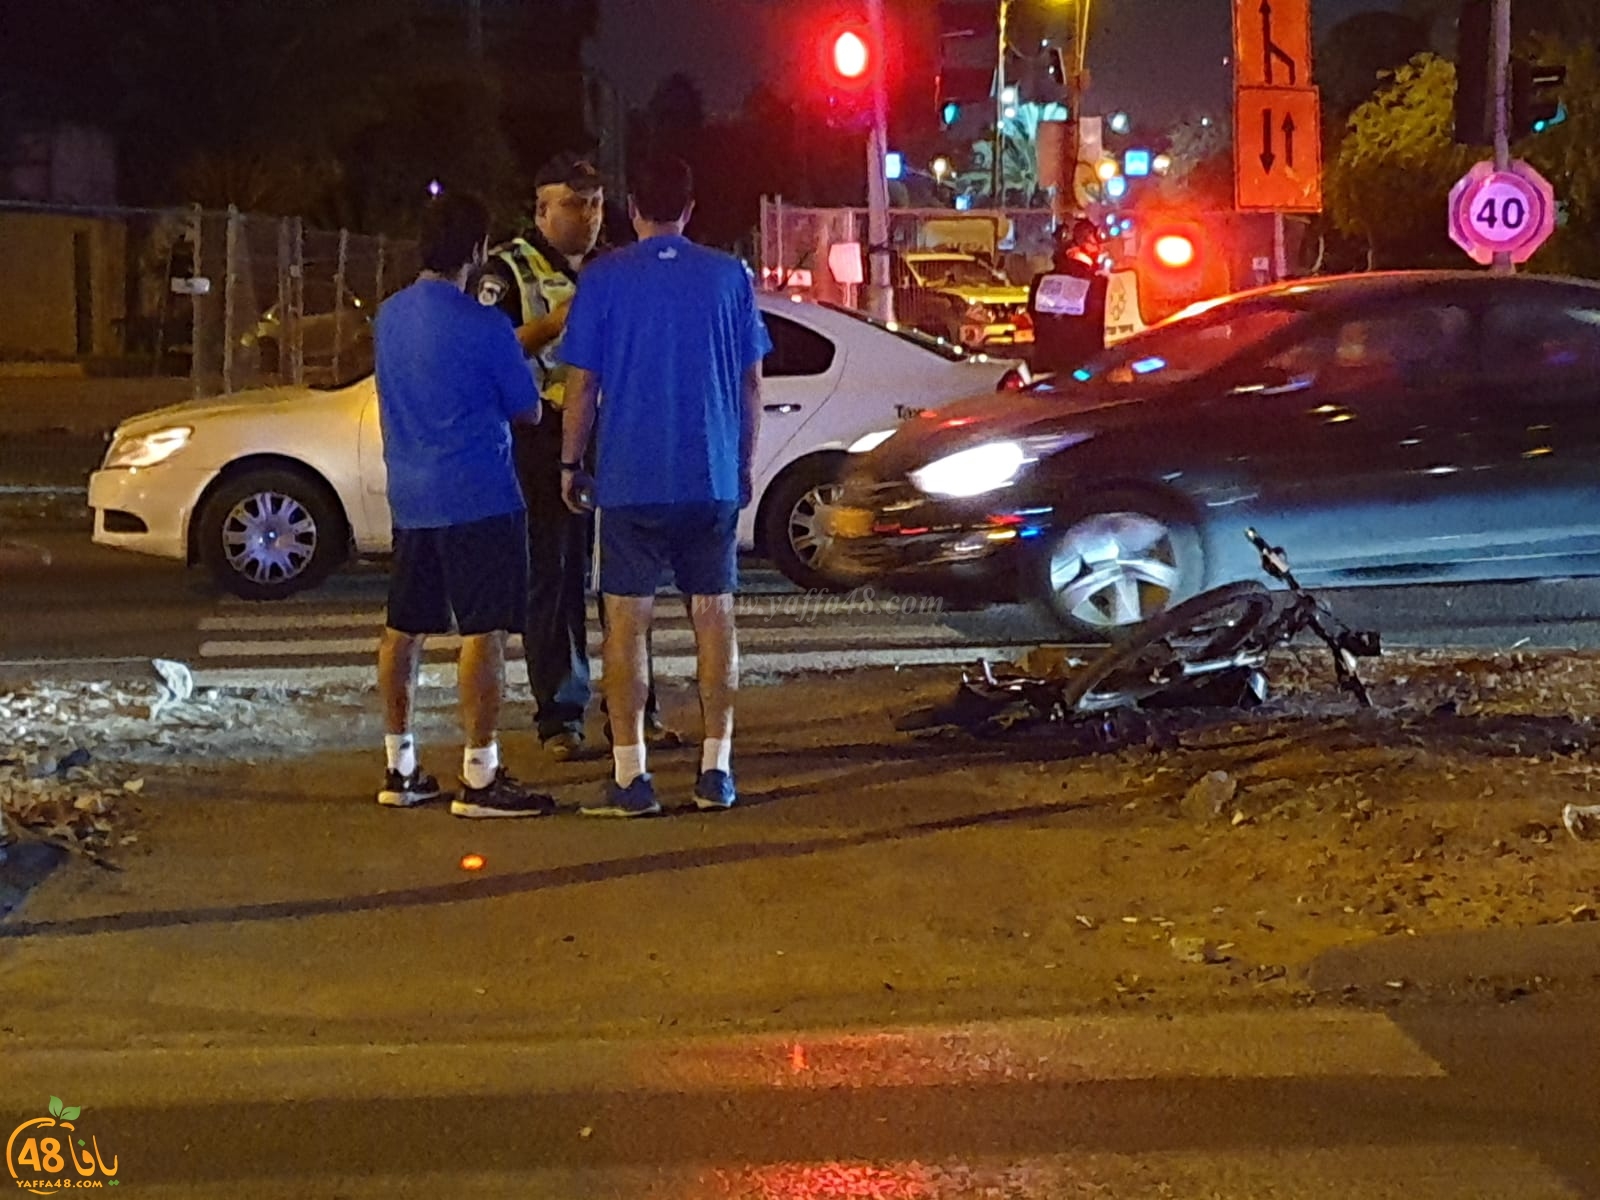  بالصور: اصابة خطرة لفتاة بحادث دهس مروّع في يافا 